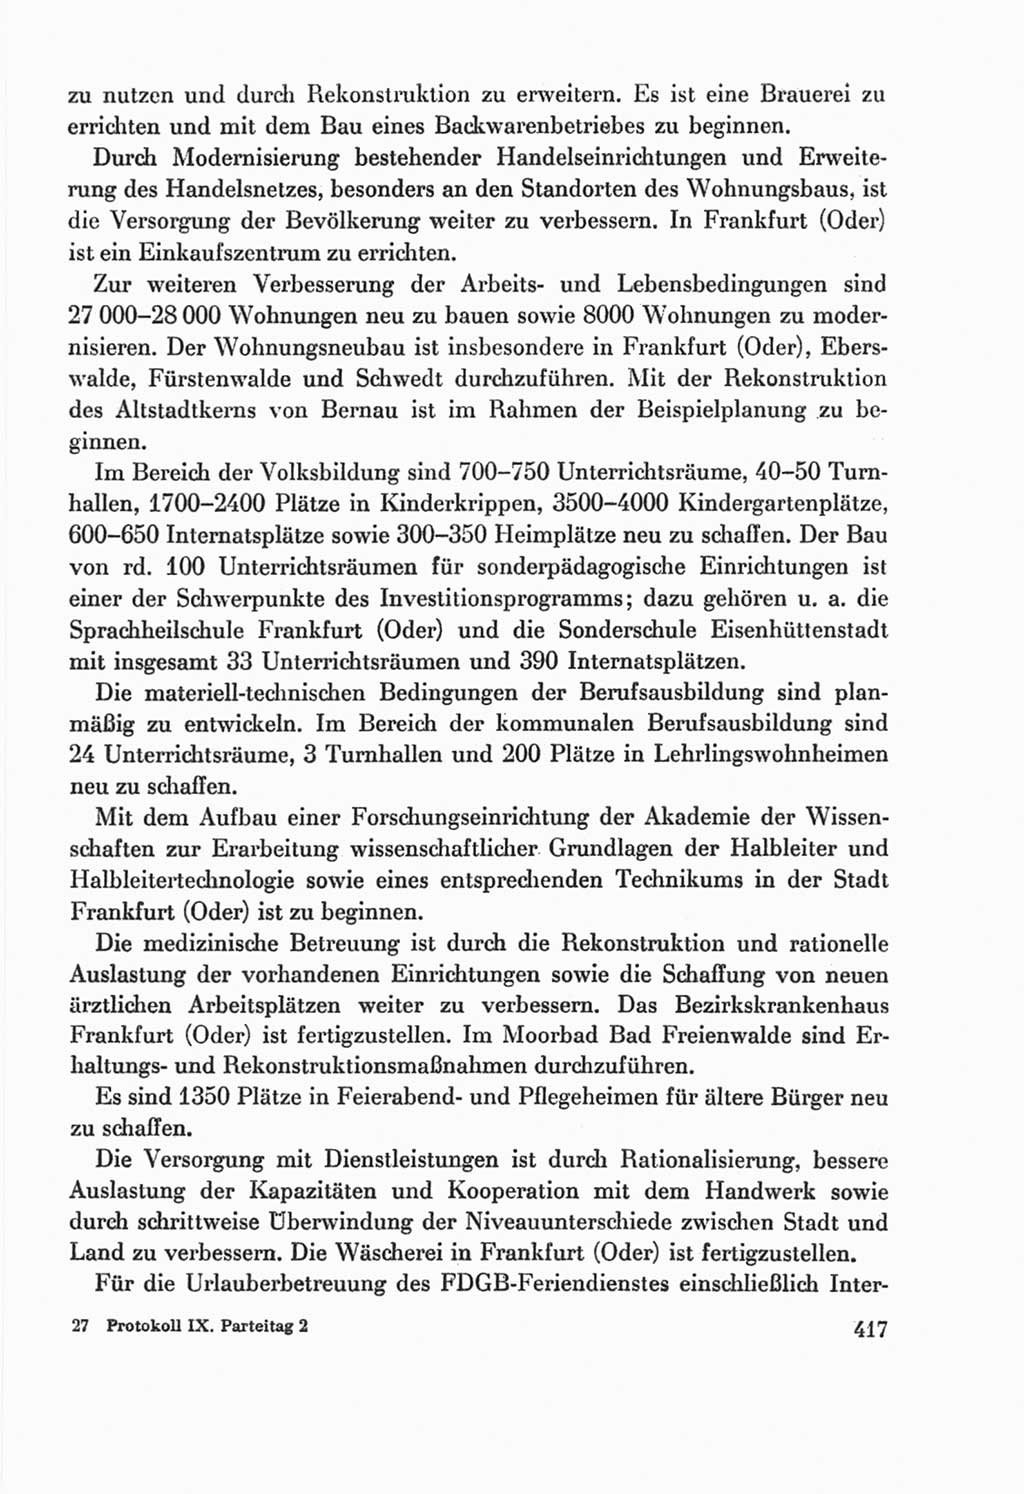 Protokoll der Verhandlungen des Ⅸ. Parteitages der Sozialistischen Einheitspartei Deutschlands (SED) [Deutsche Demokratische Republik (DDR)] 1976, Band 2, Seite 417 (Prot. Verh. Ⅸ. PT SED DDR 1976, Bd. 2, S. 417)